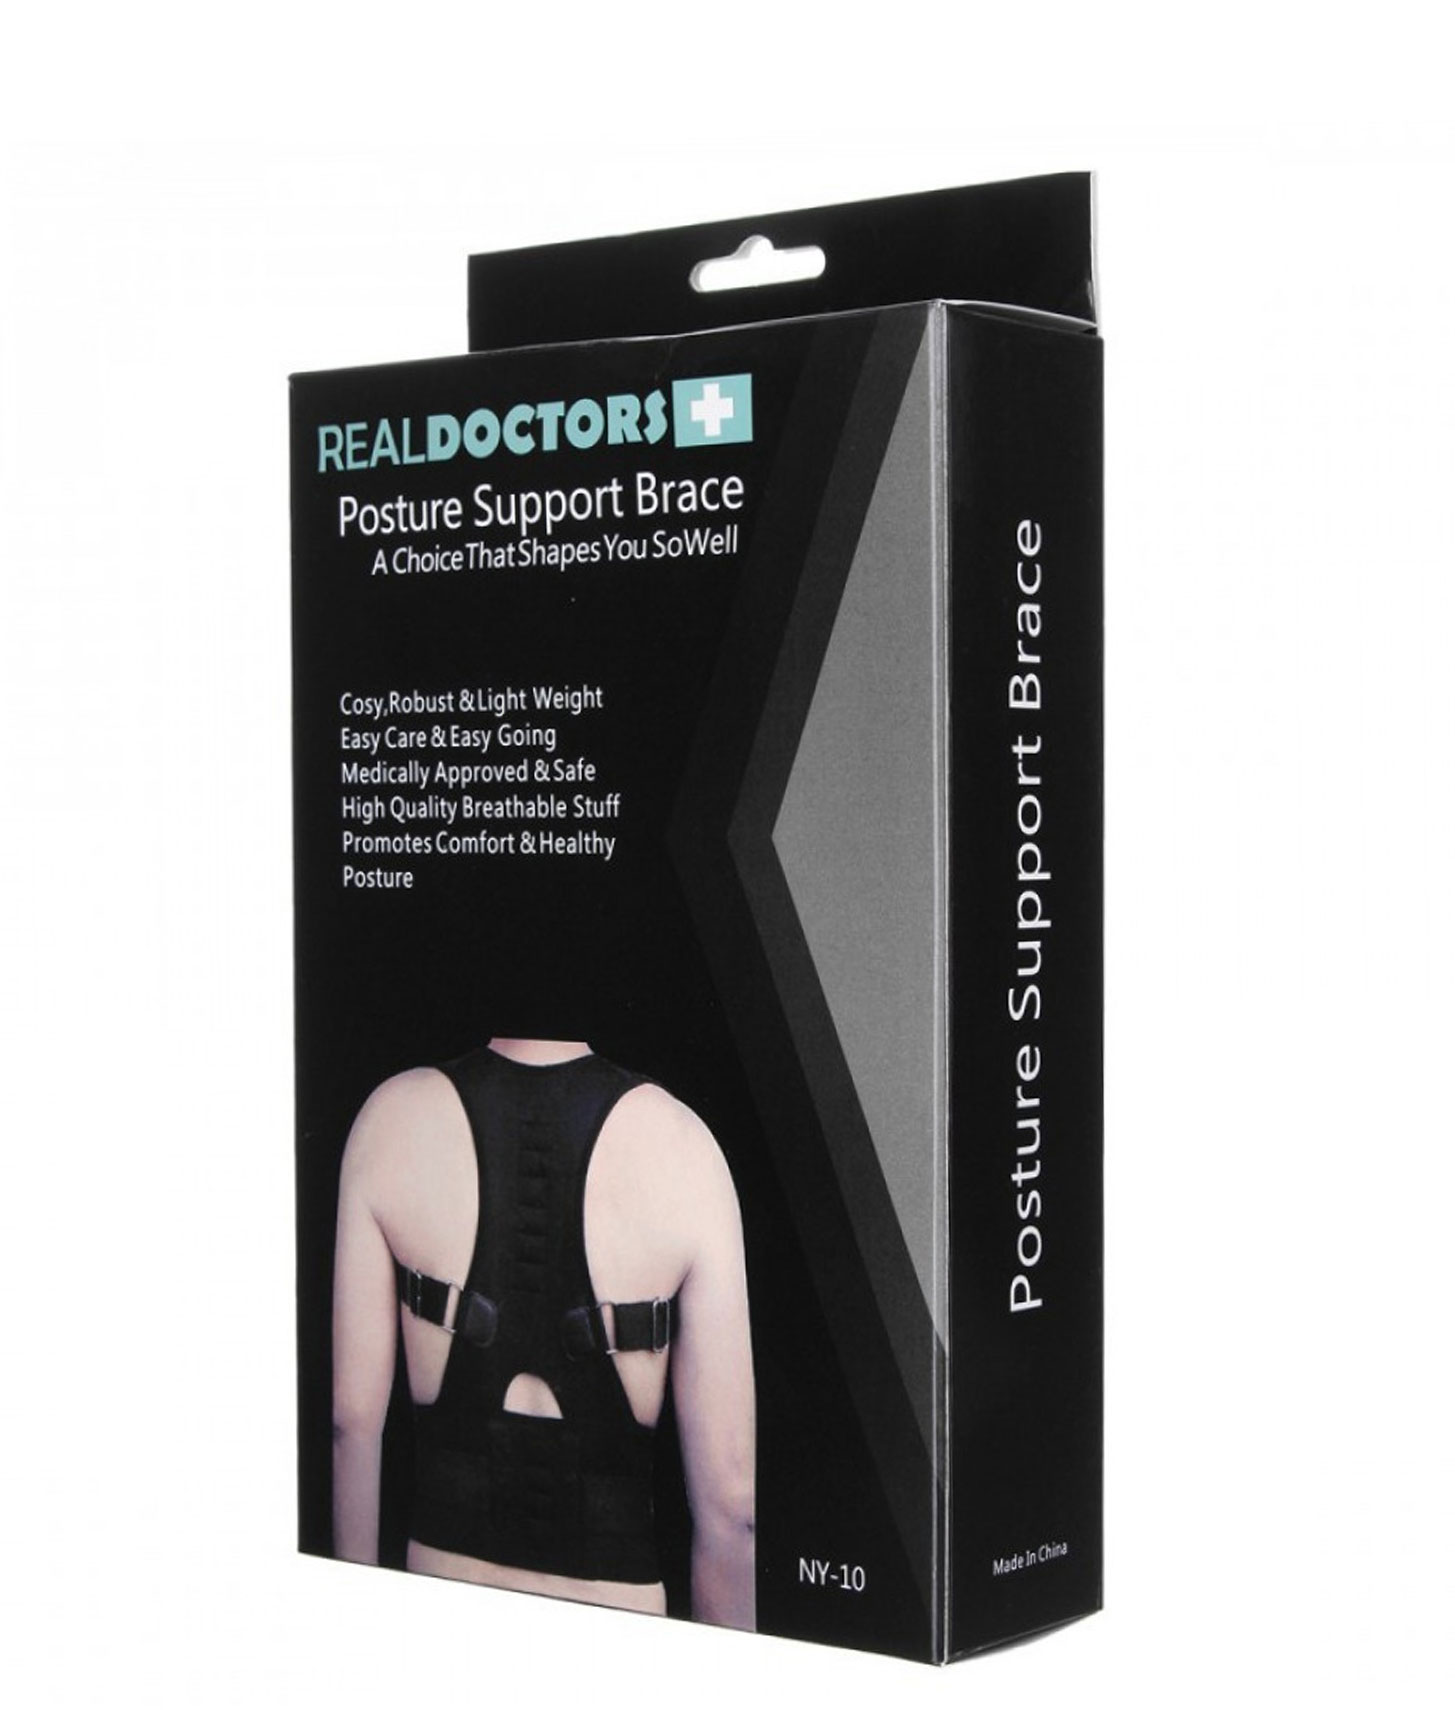 Real doctors. Магнитный корректор осанки real Doctors+ NY-10. Корректор осанки real Doctors posture support Brace. Real Doctors инновационный корректор осанки. Корректор осанки posture support.